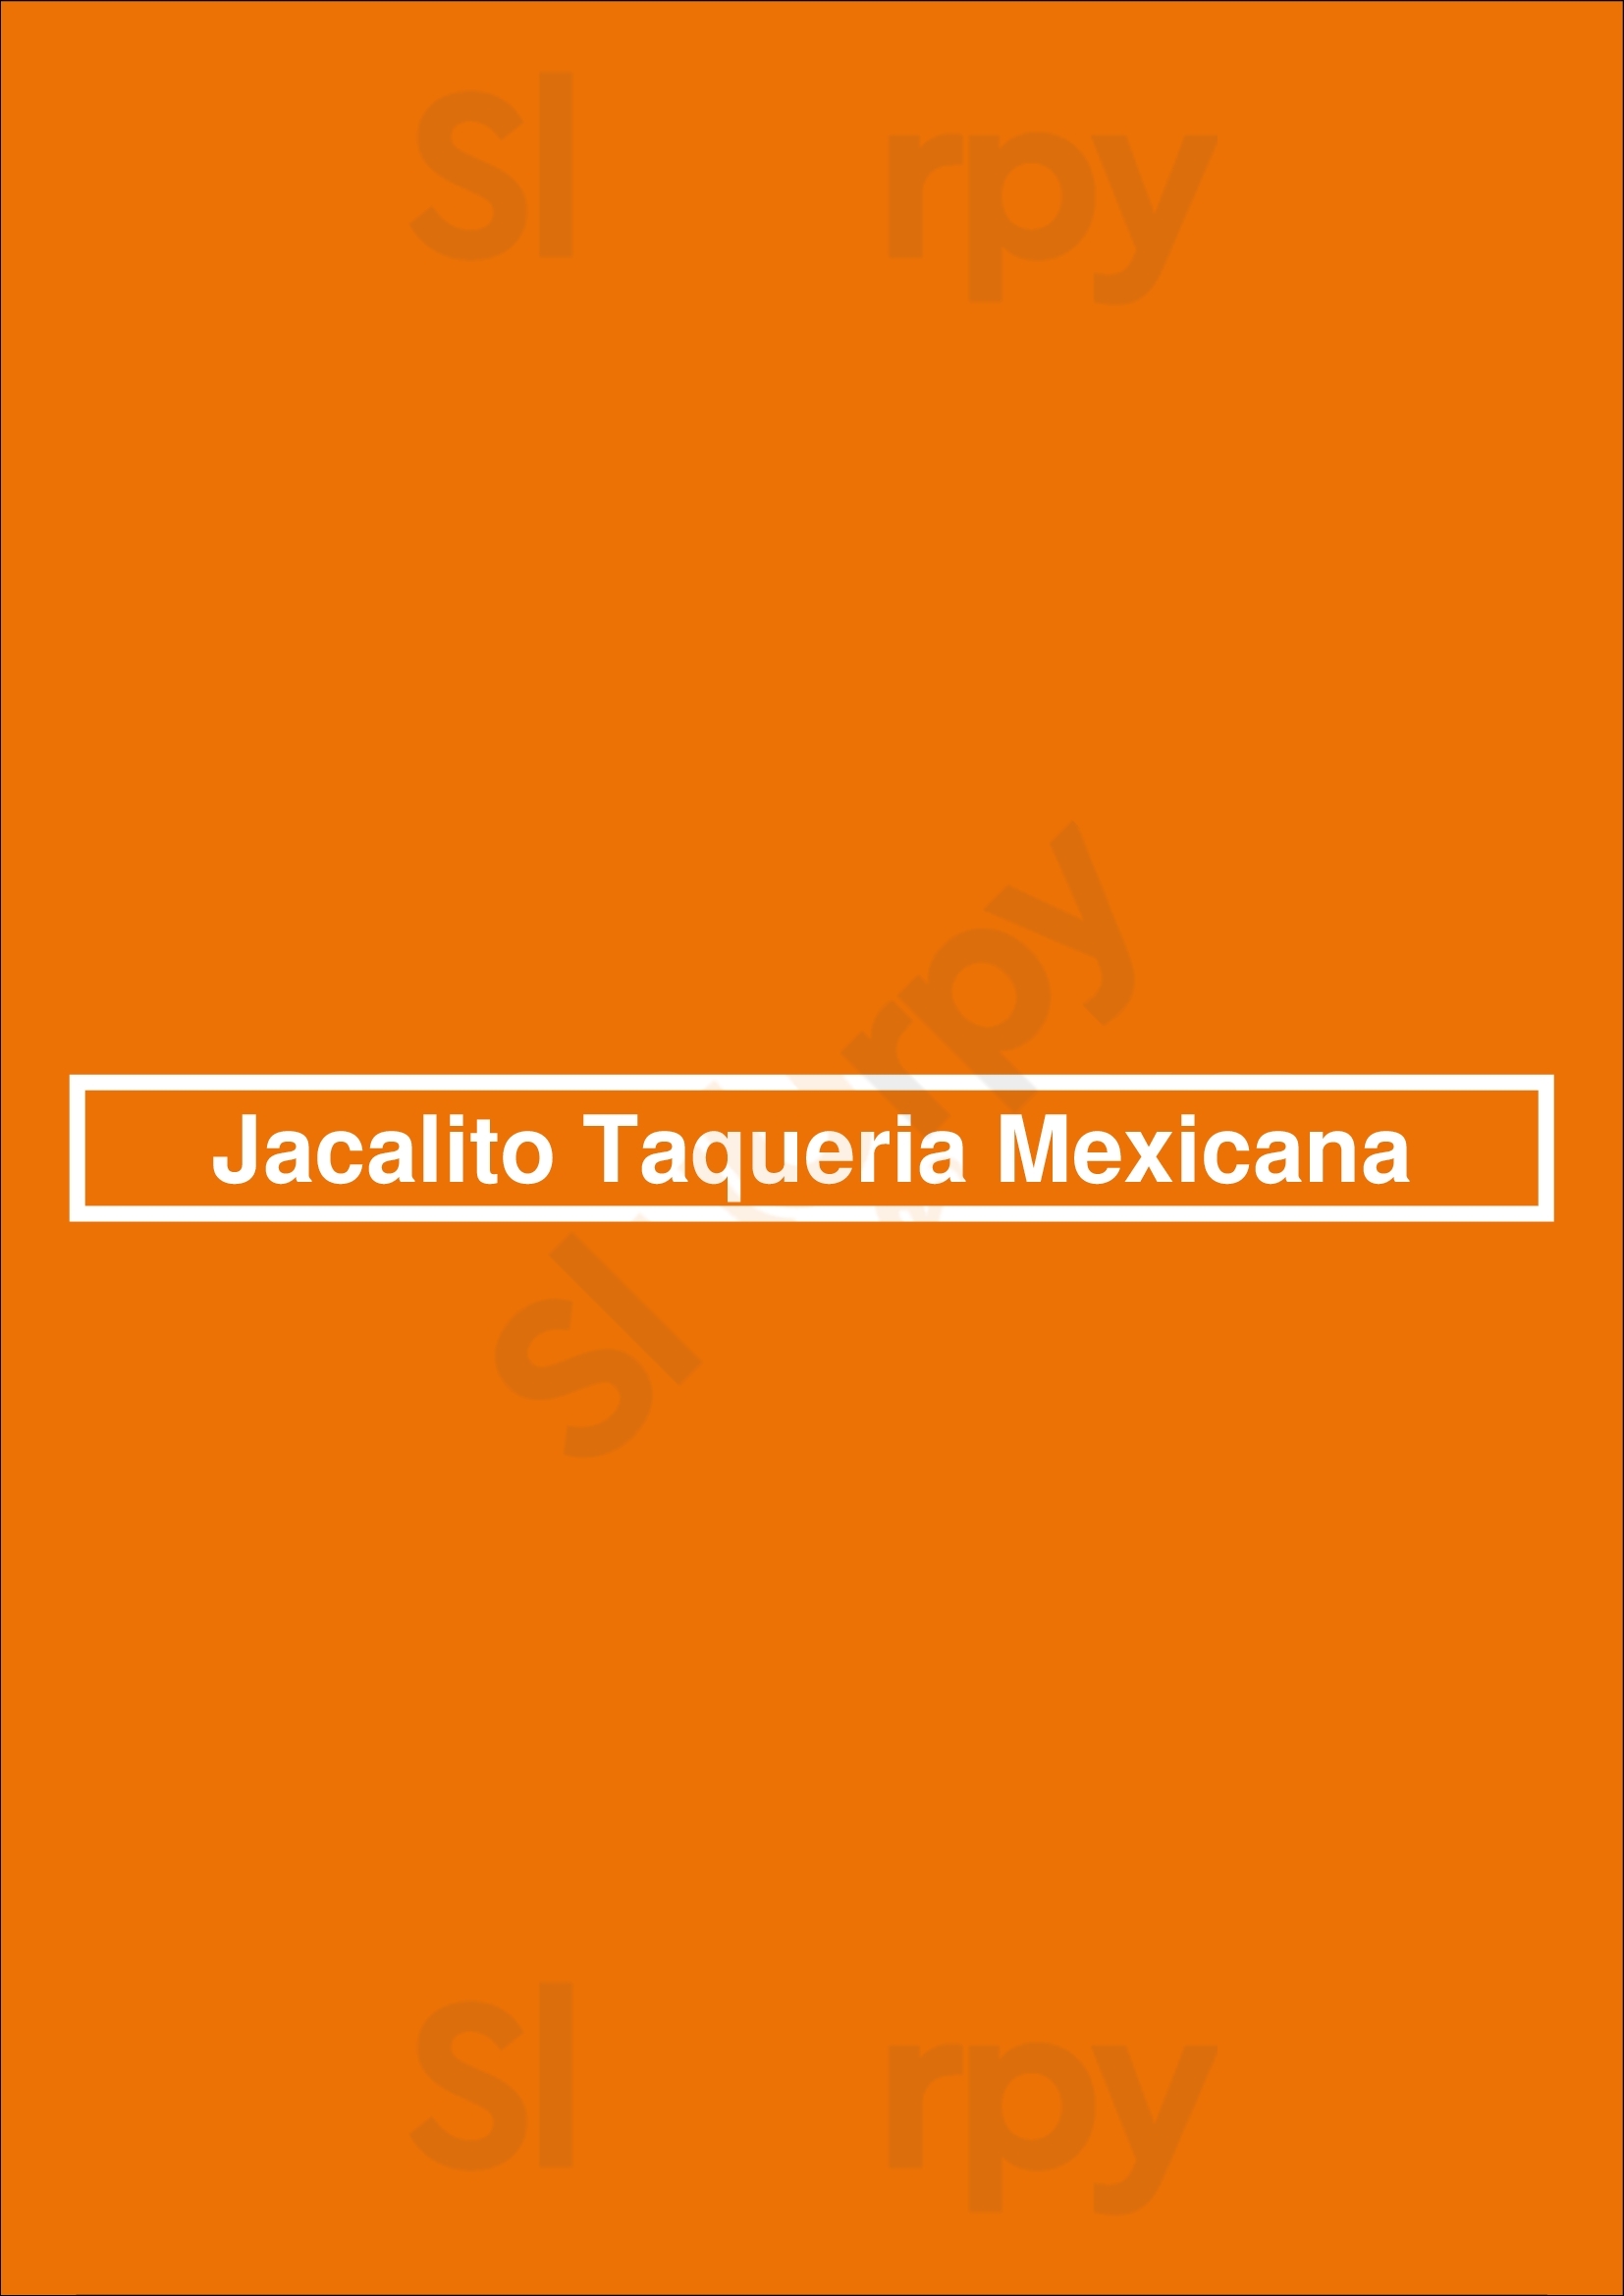 Jacalito Taqueria Mexicana Miami Menu - 1